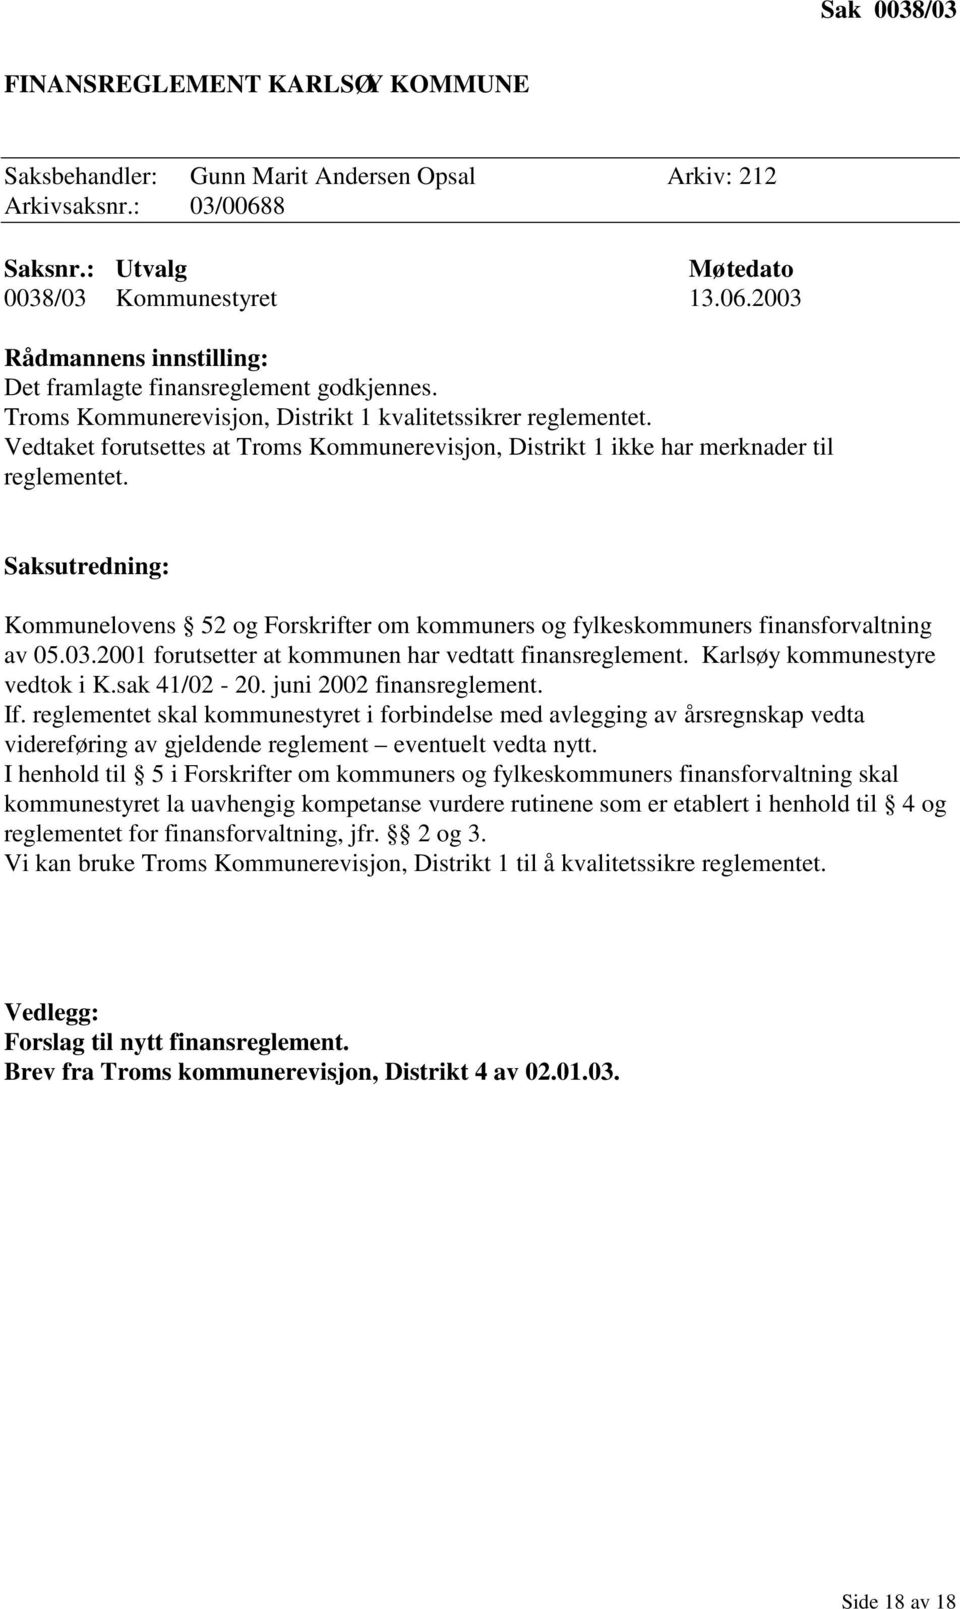 Saksutredning: Kommunelovens 52 og Forskrifter om kommuners og fylkeskommuners finansforvaltning av 05.03.2001 forutsetter at kommunen har vedtatt finansreglement. Karlsøy kommunestyre vedtok i K.